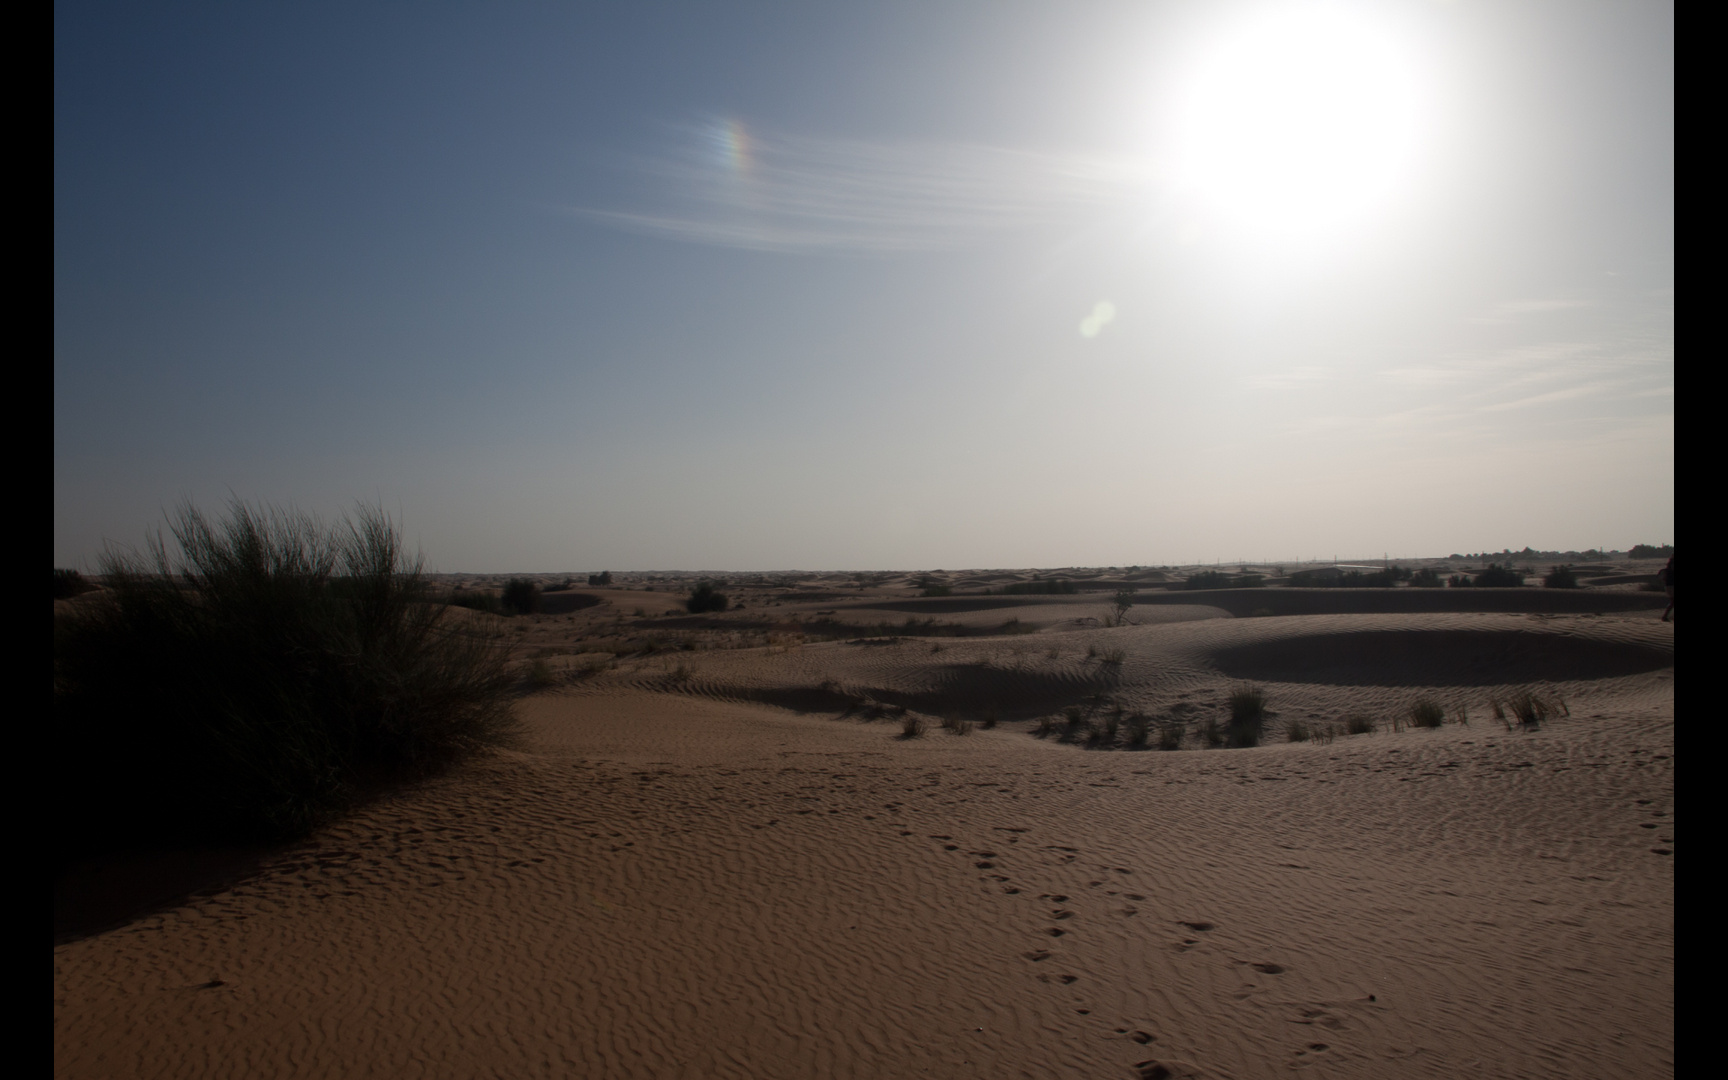 Wüste Dubai